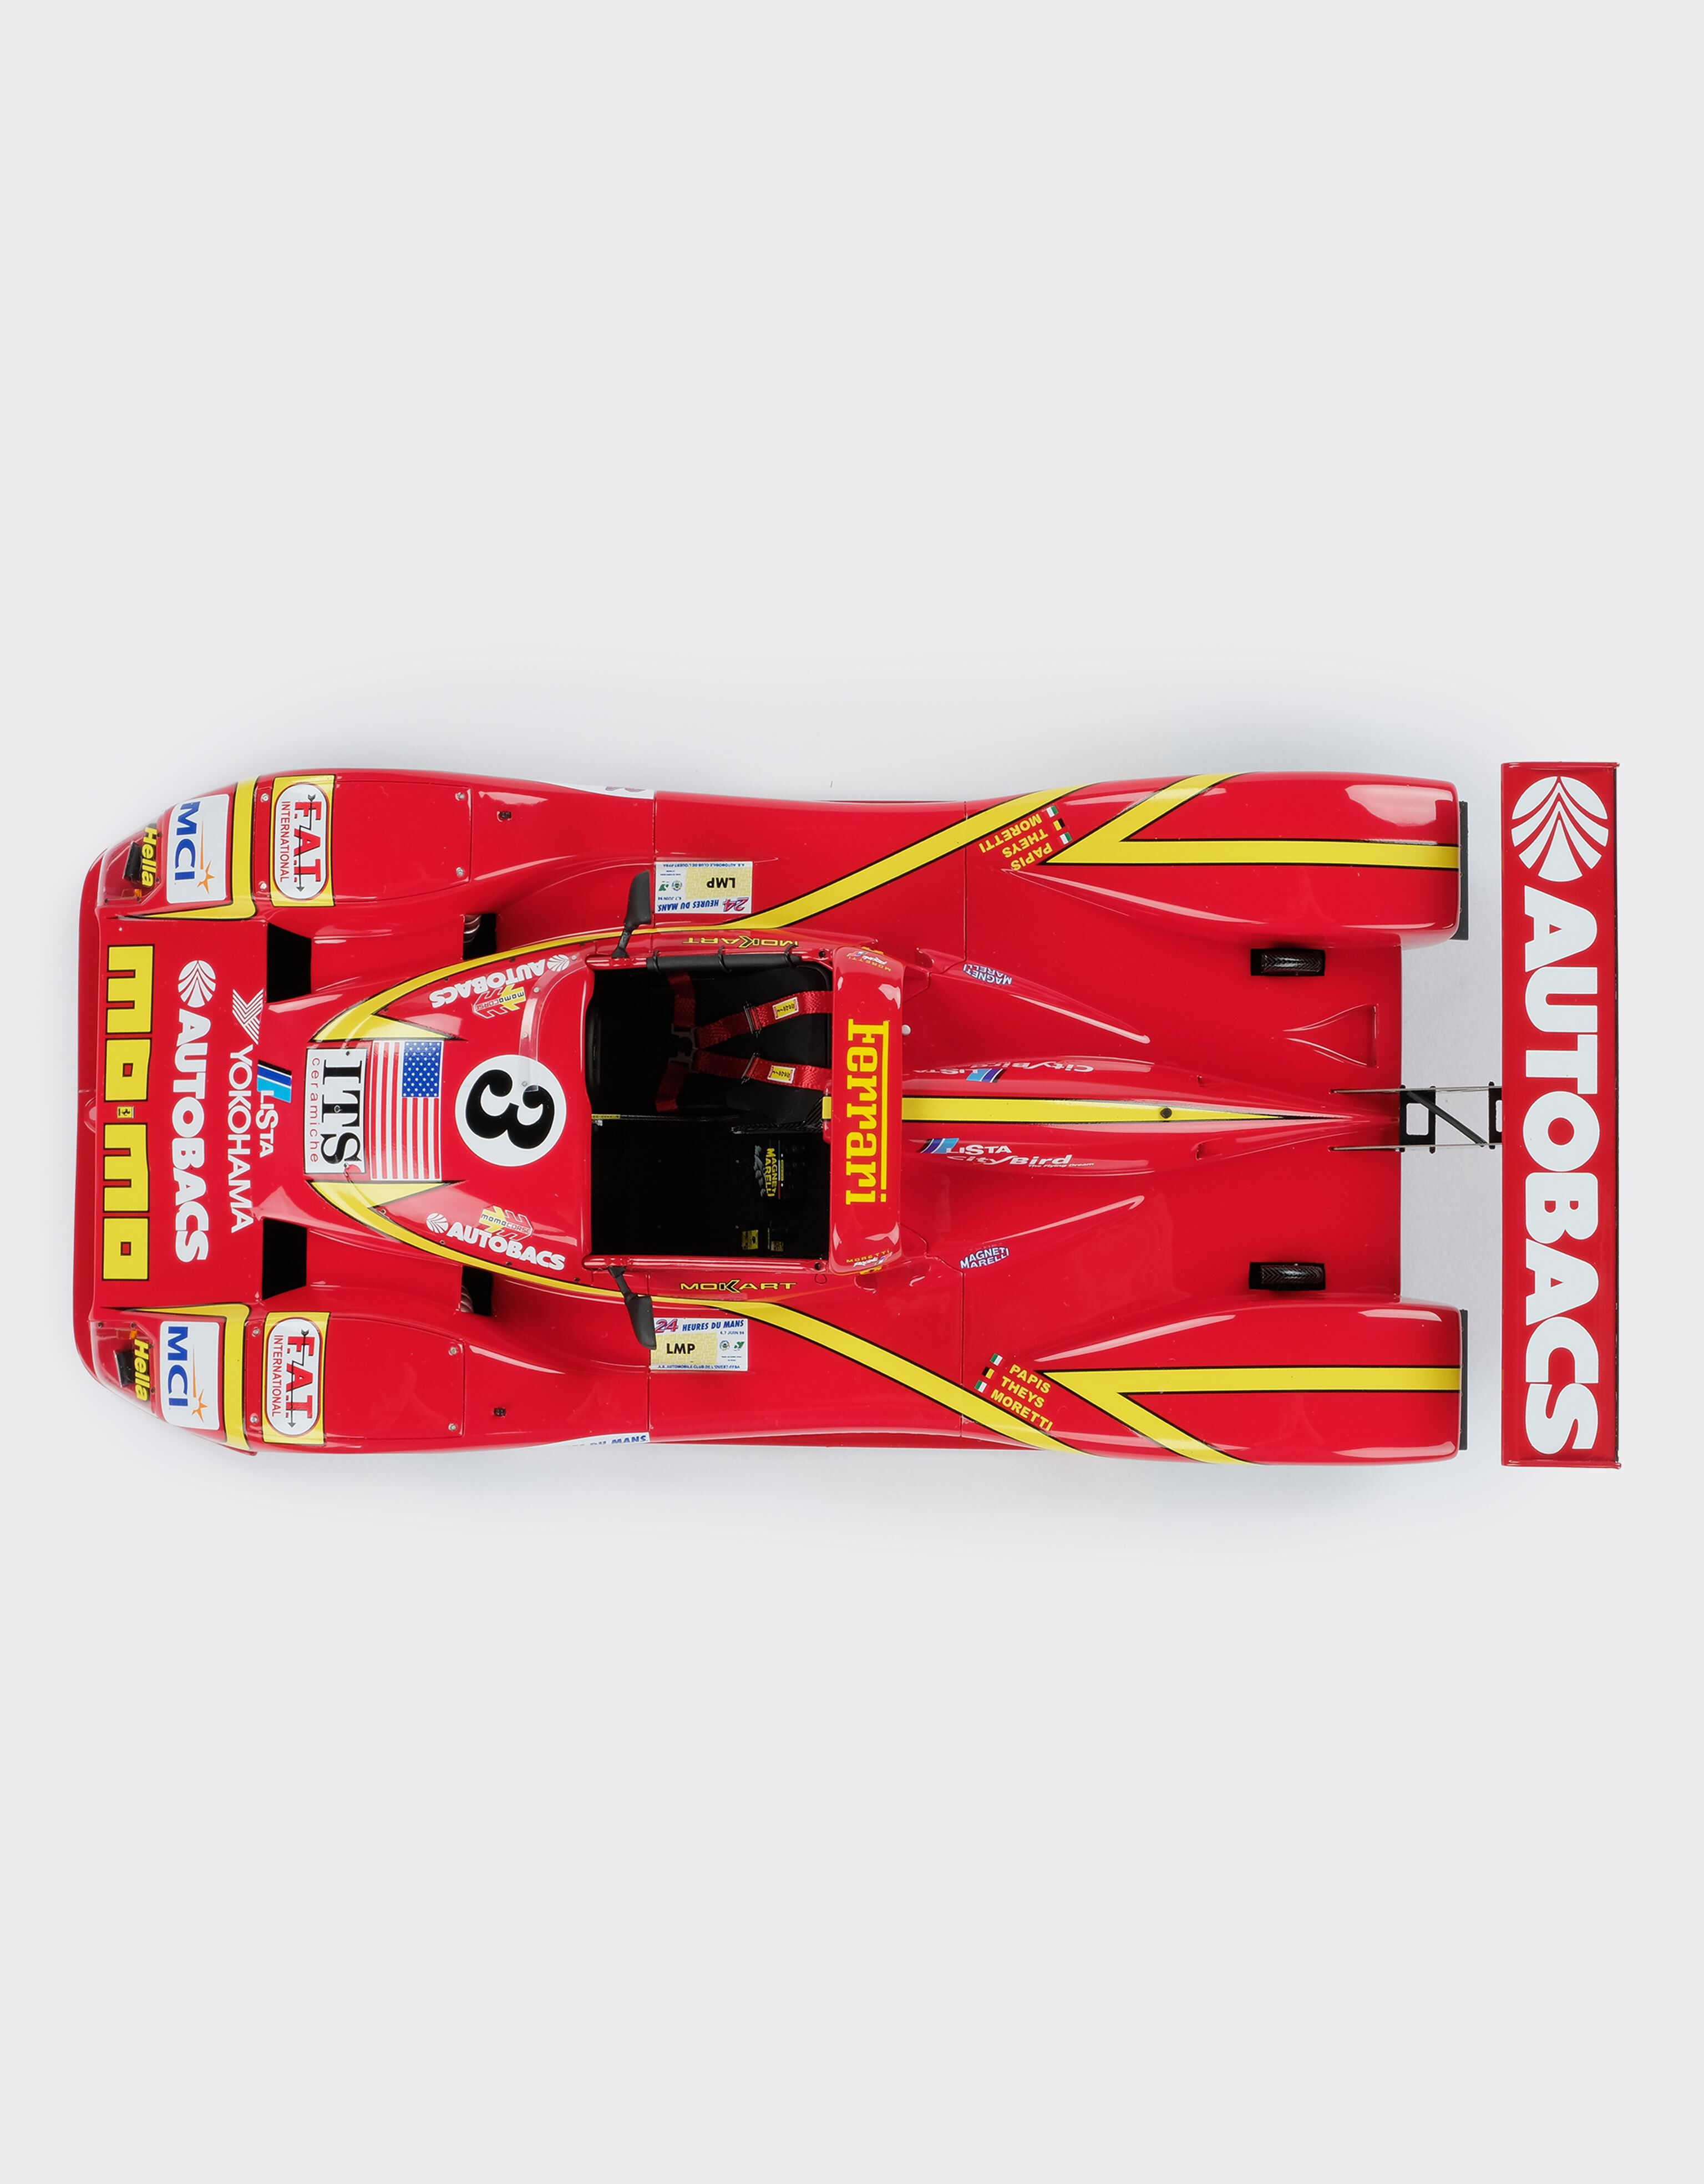 Ferrari Ferrari 333SP Le Mans model in 1:18 scale 红色 L7589f